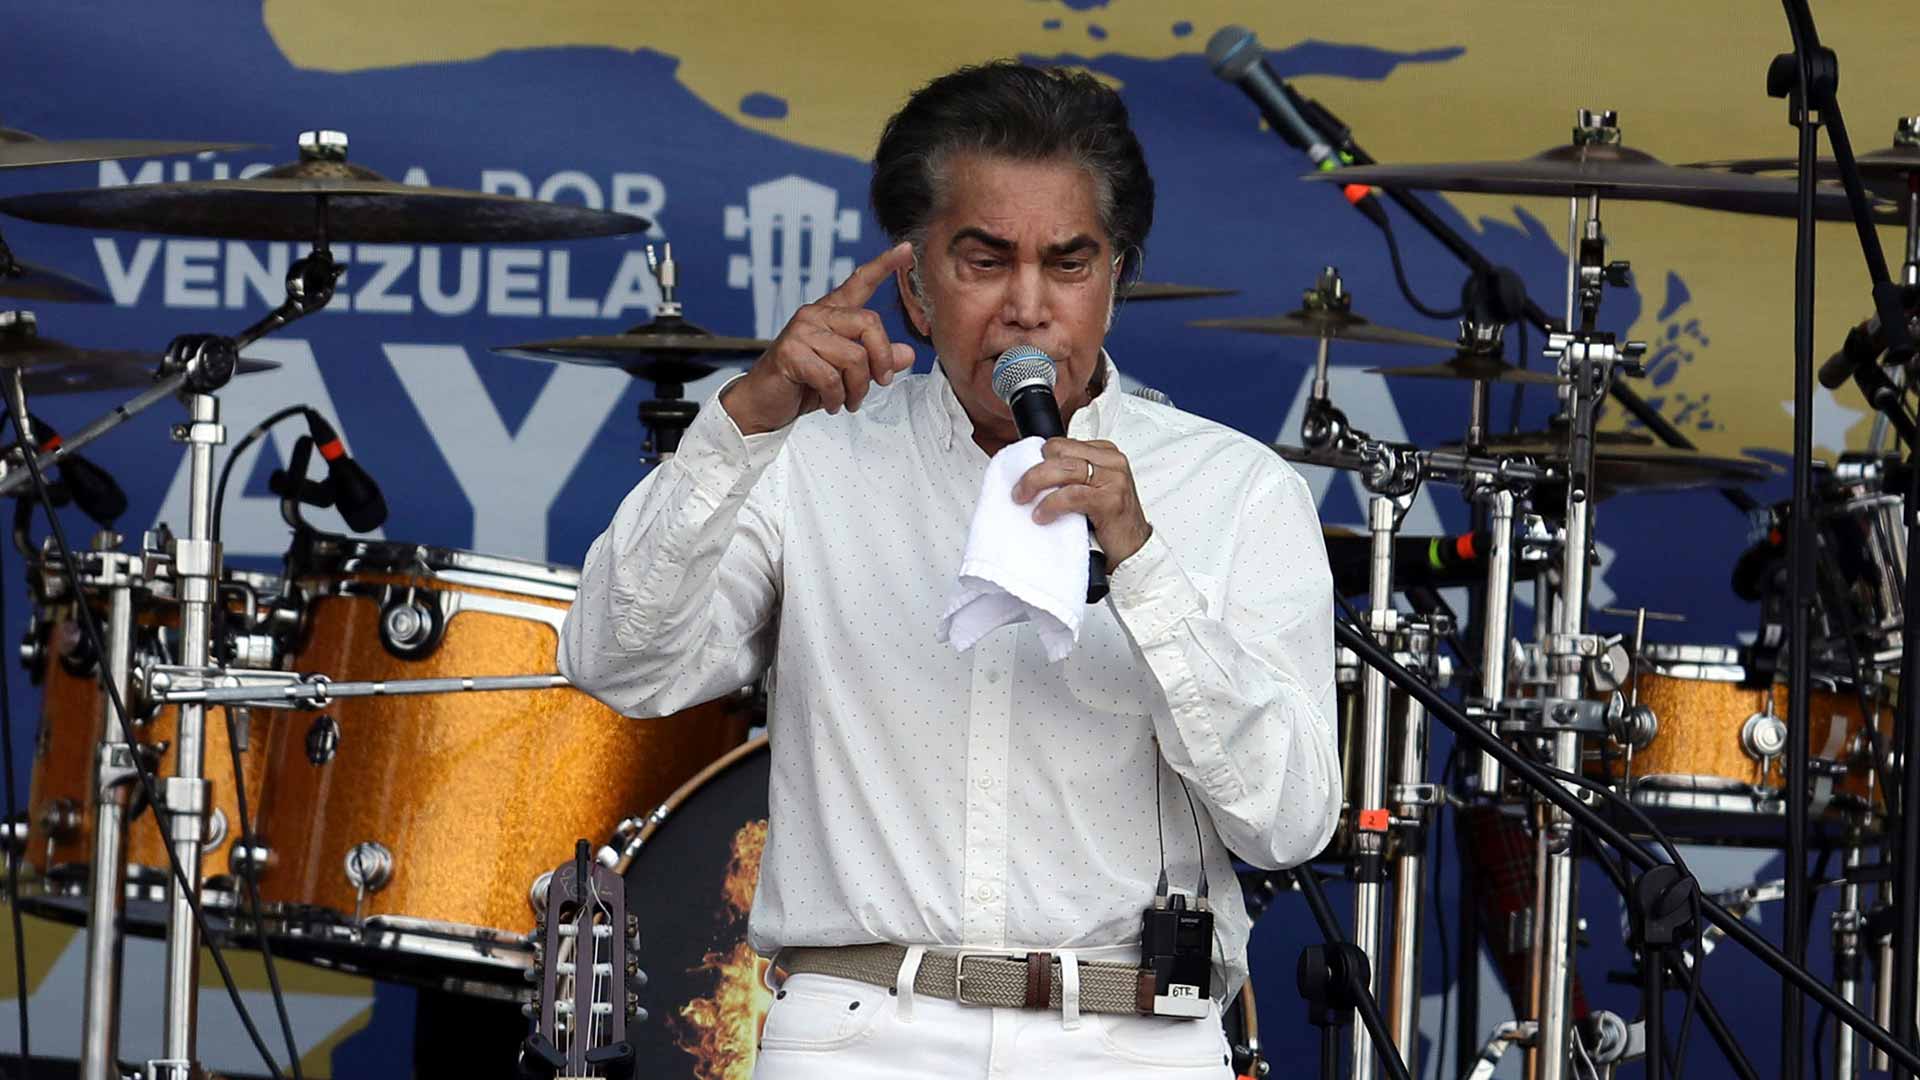 Chispa  chispear demoler Rubicundo El Puma, dispuesto a presentar su candidatura a la presidencia de Venezuela